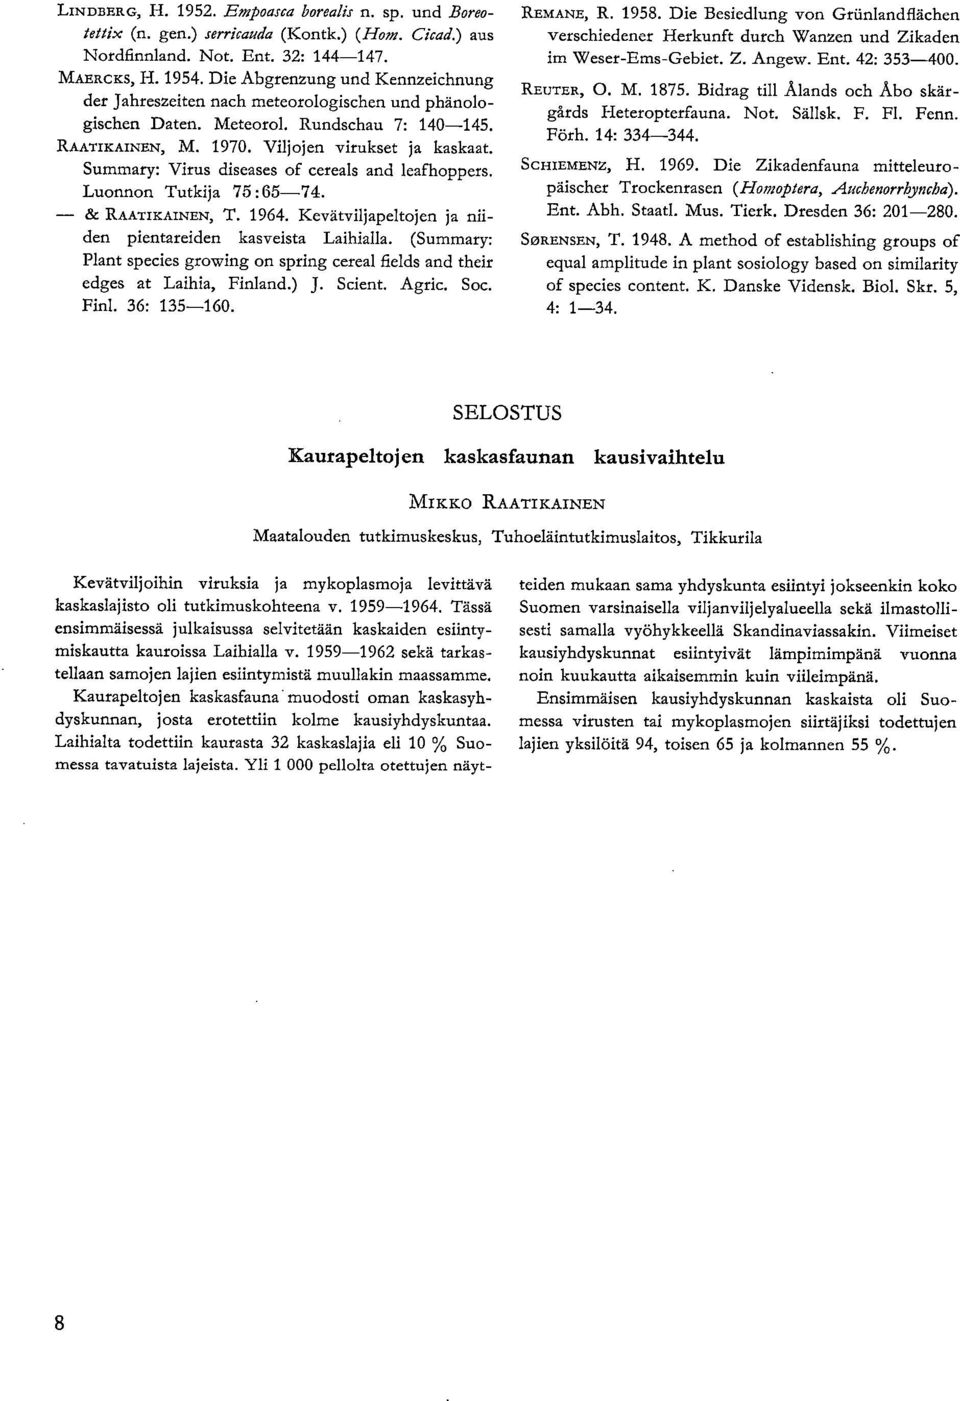 Summary: Virus diseases of cereals and leafhoppers. Luonnon Tutkija 75:65-74. 8e RAATIKAINEN, T. 1964. Kevätviljapeltojen ja niiden pientareiden kasveista Laihialla.